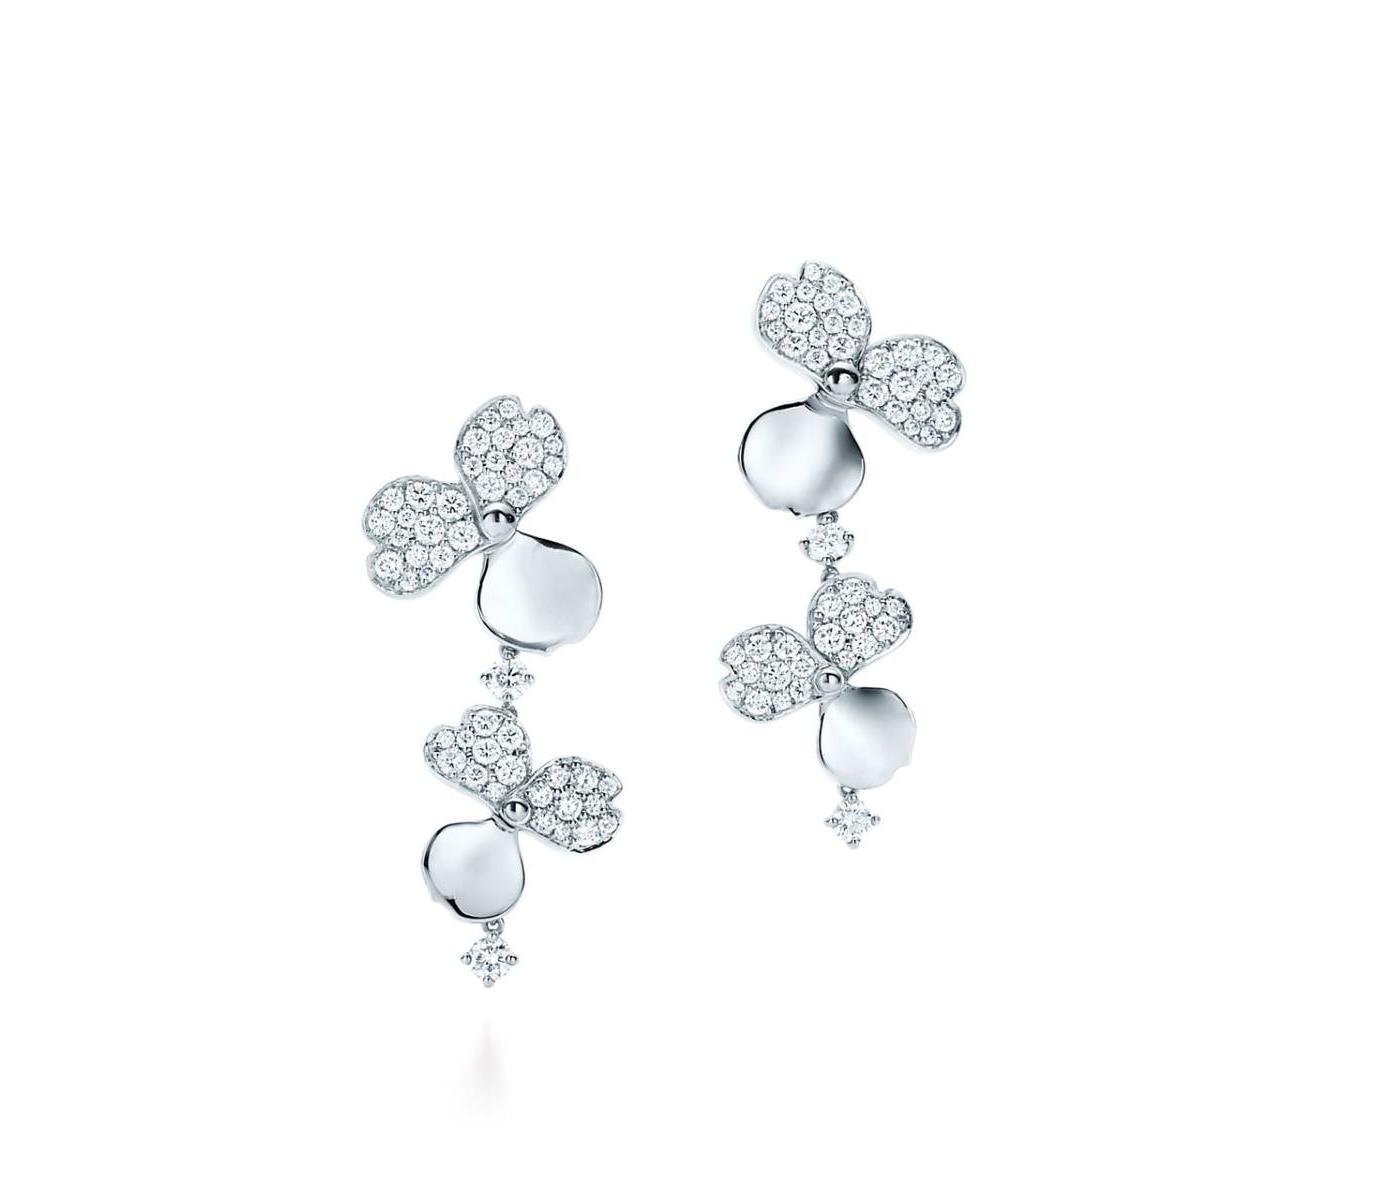 Earrings by Tiffany